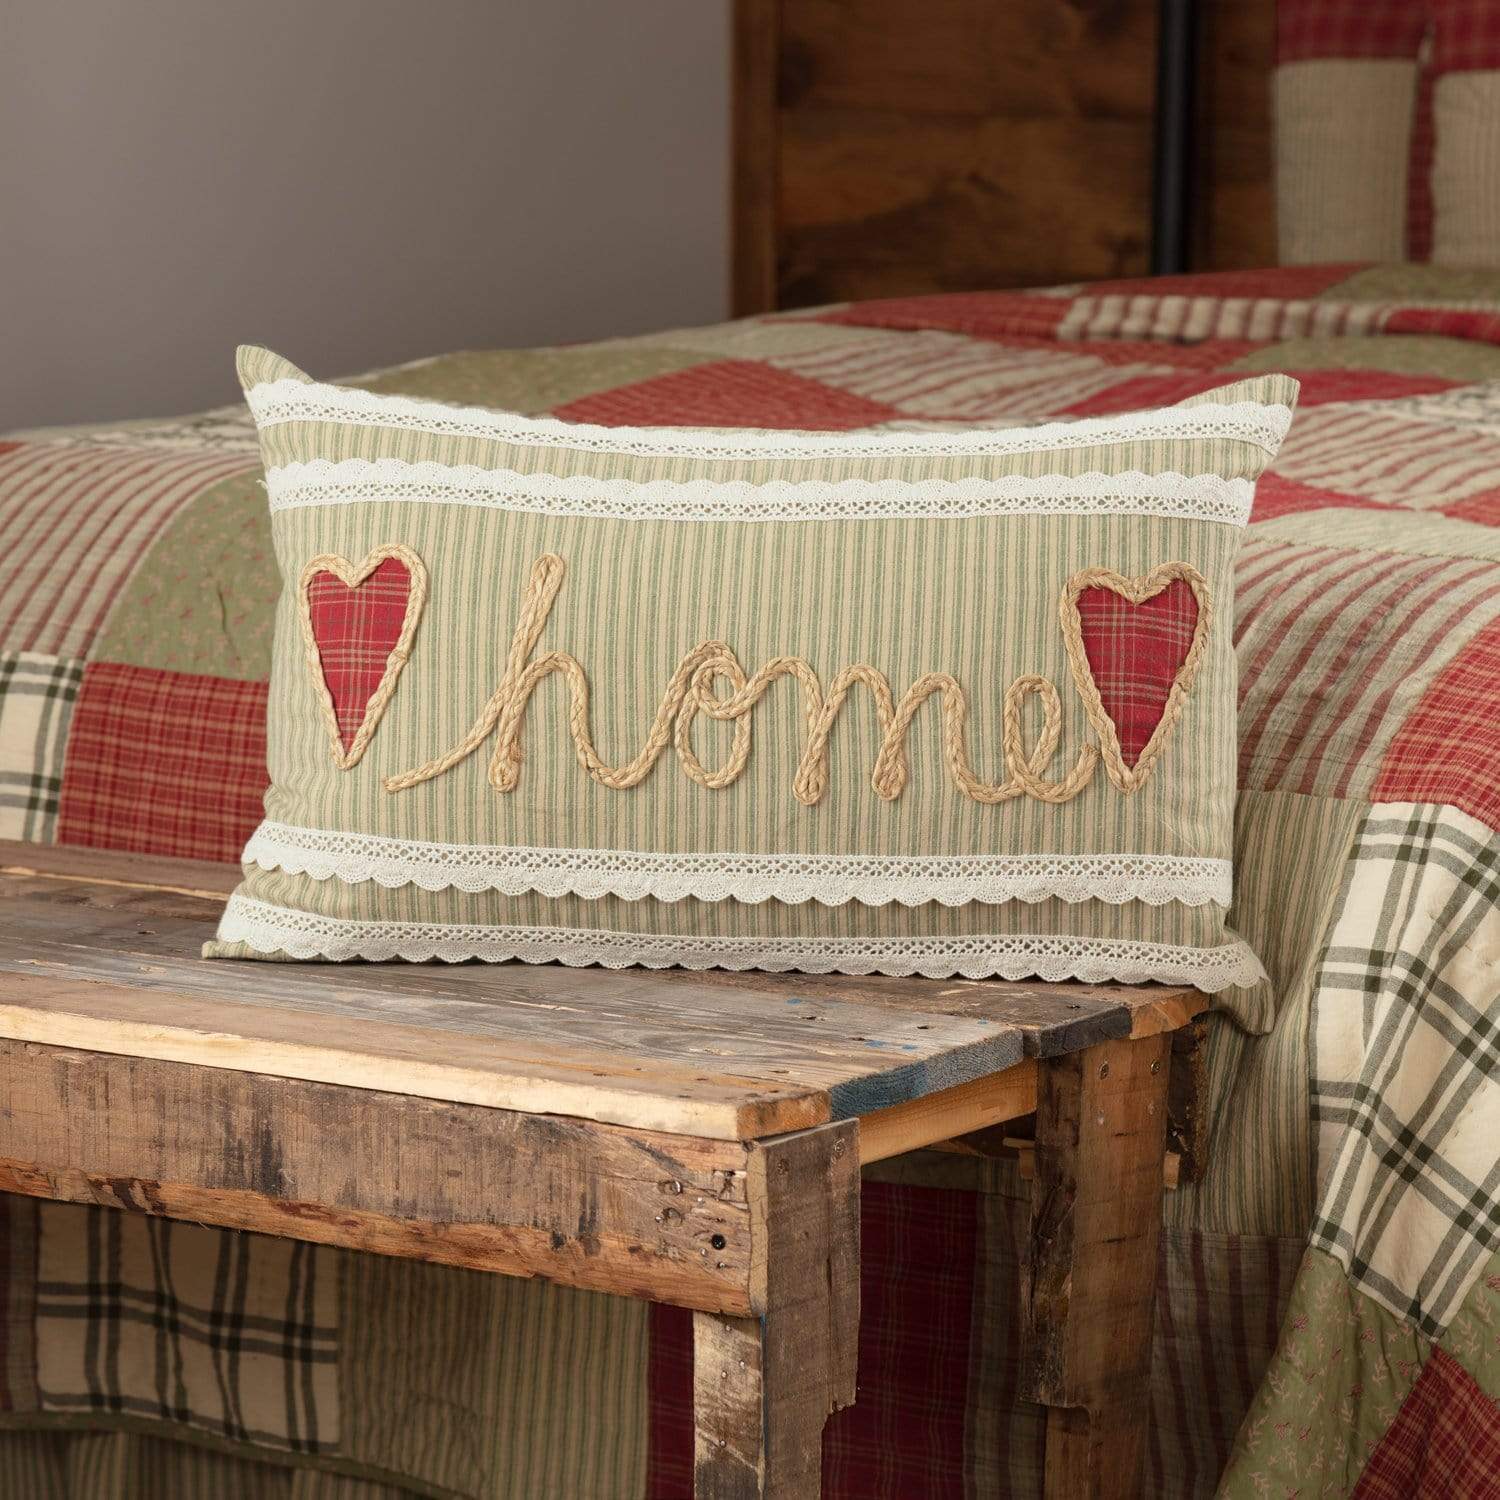 Farmhouse Bedding VHC Cotton Burlap 18x18 Pillow Solid Color